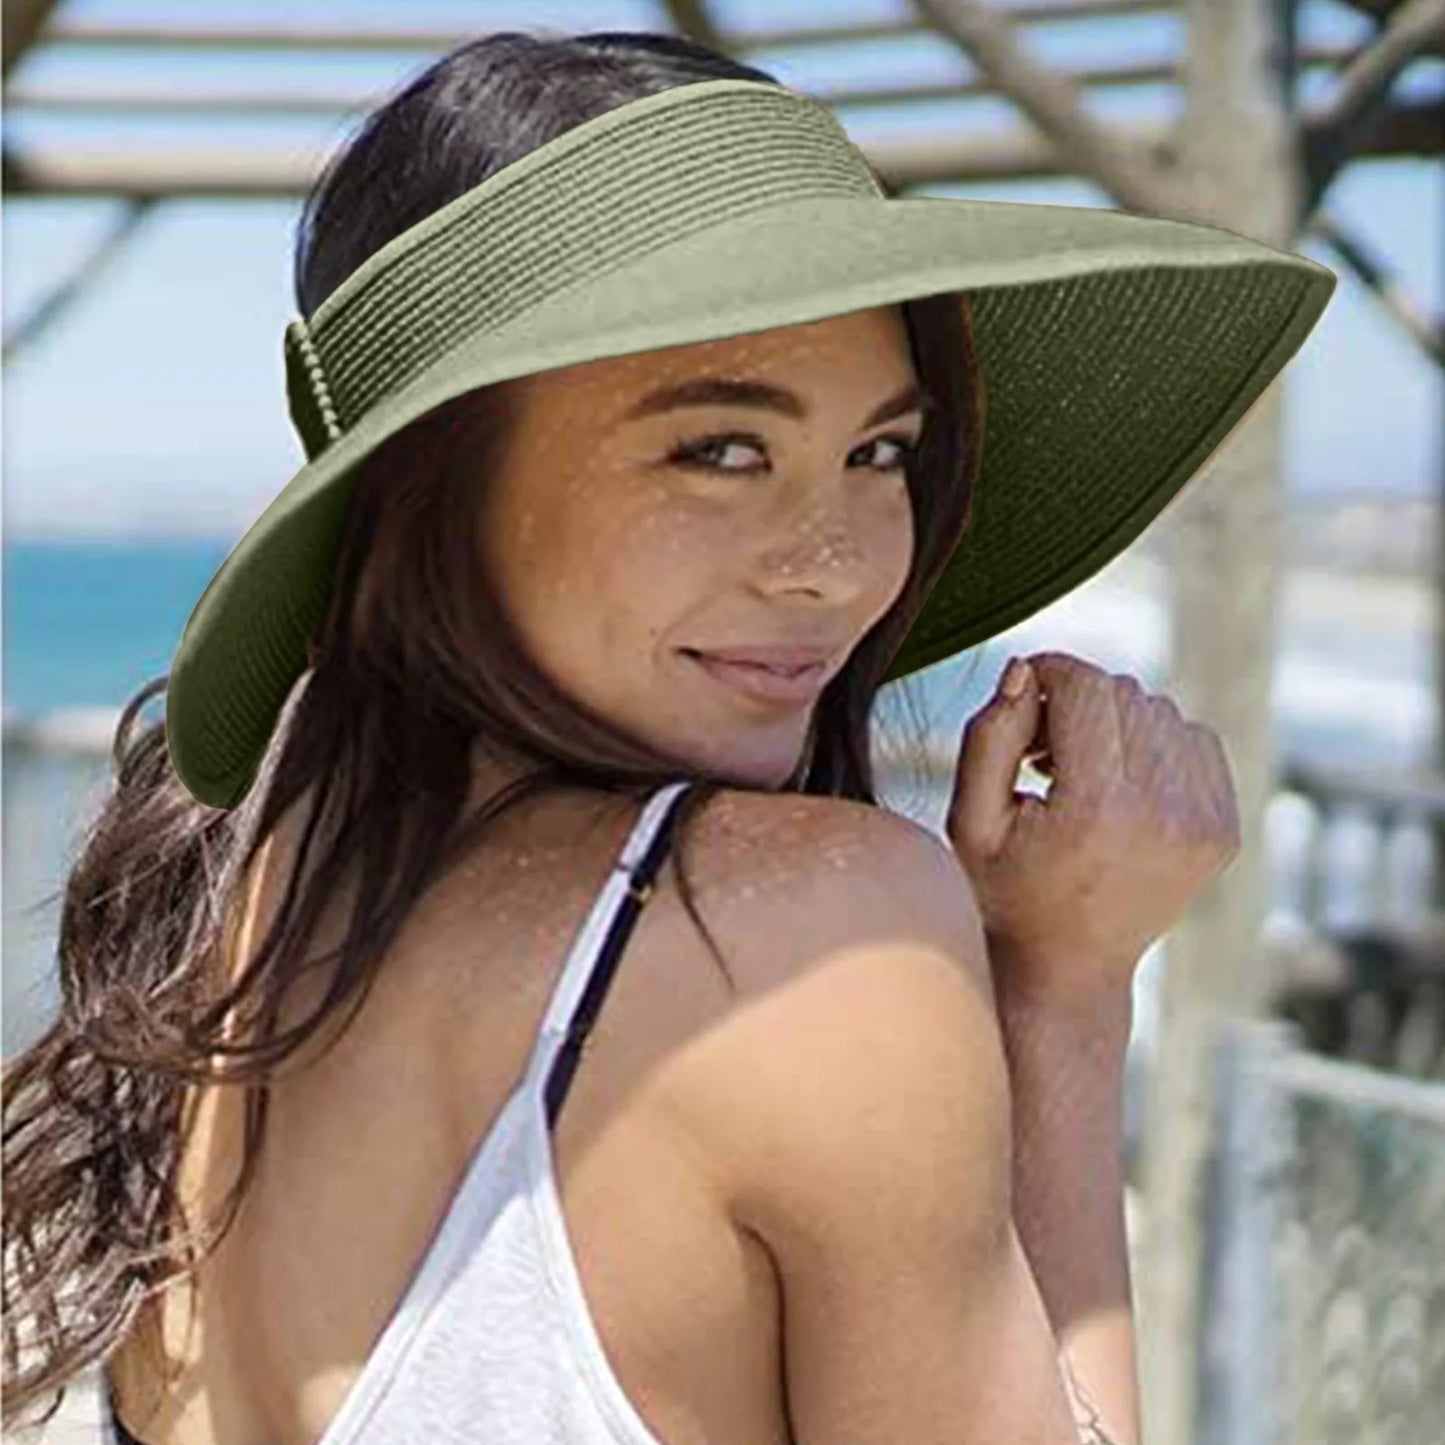 2021 vară pliabilă pălărie goală pălărie de paie de pălărie soare pălărie de plajă uv protector soare pălărie de soare panama pălărie de paie pentru femei